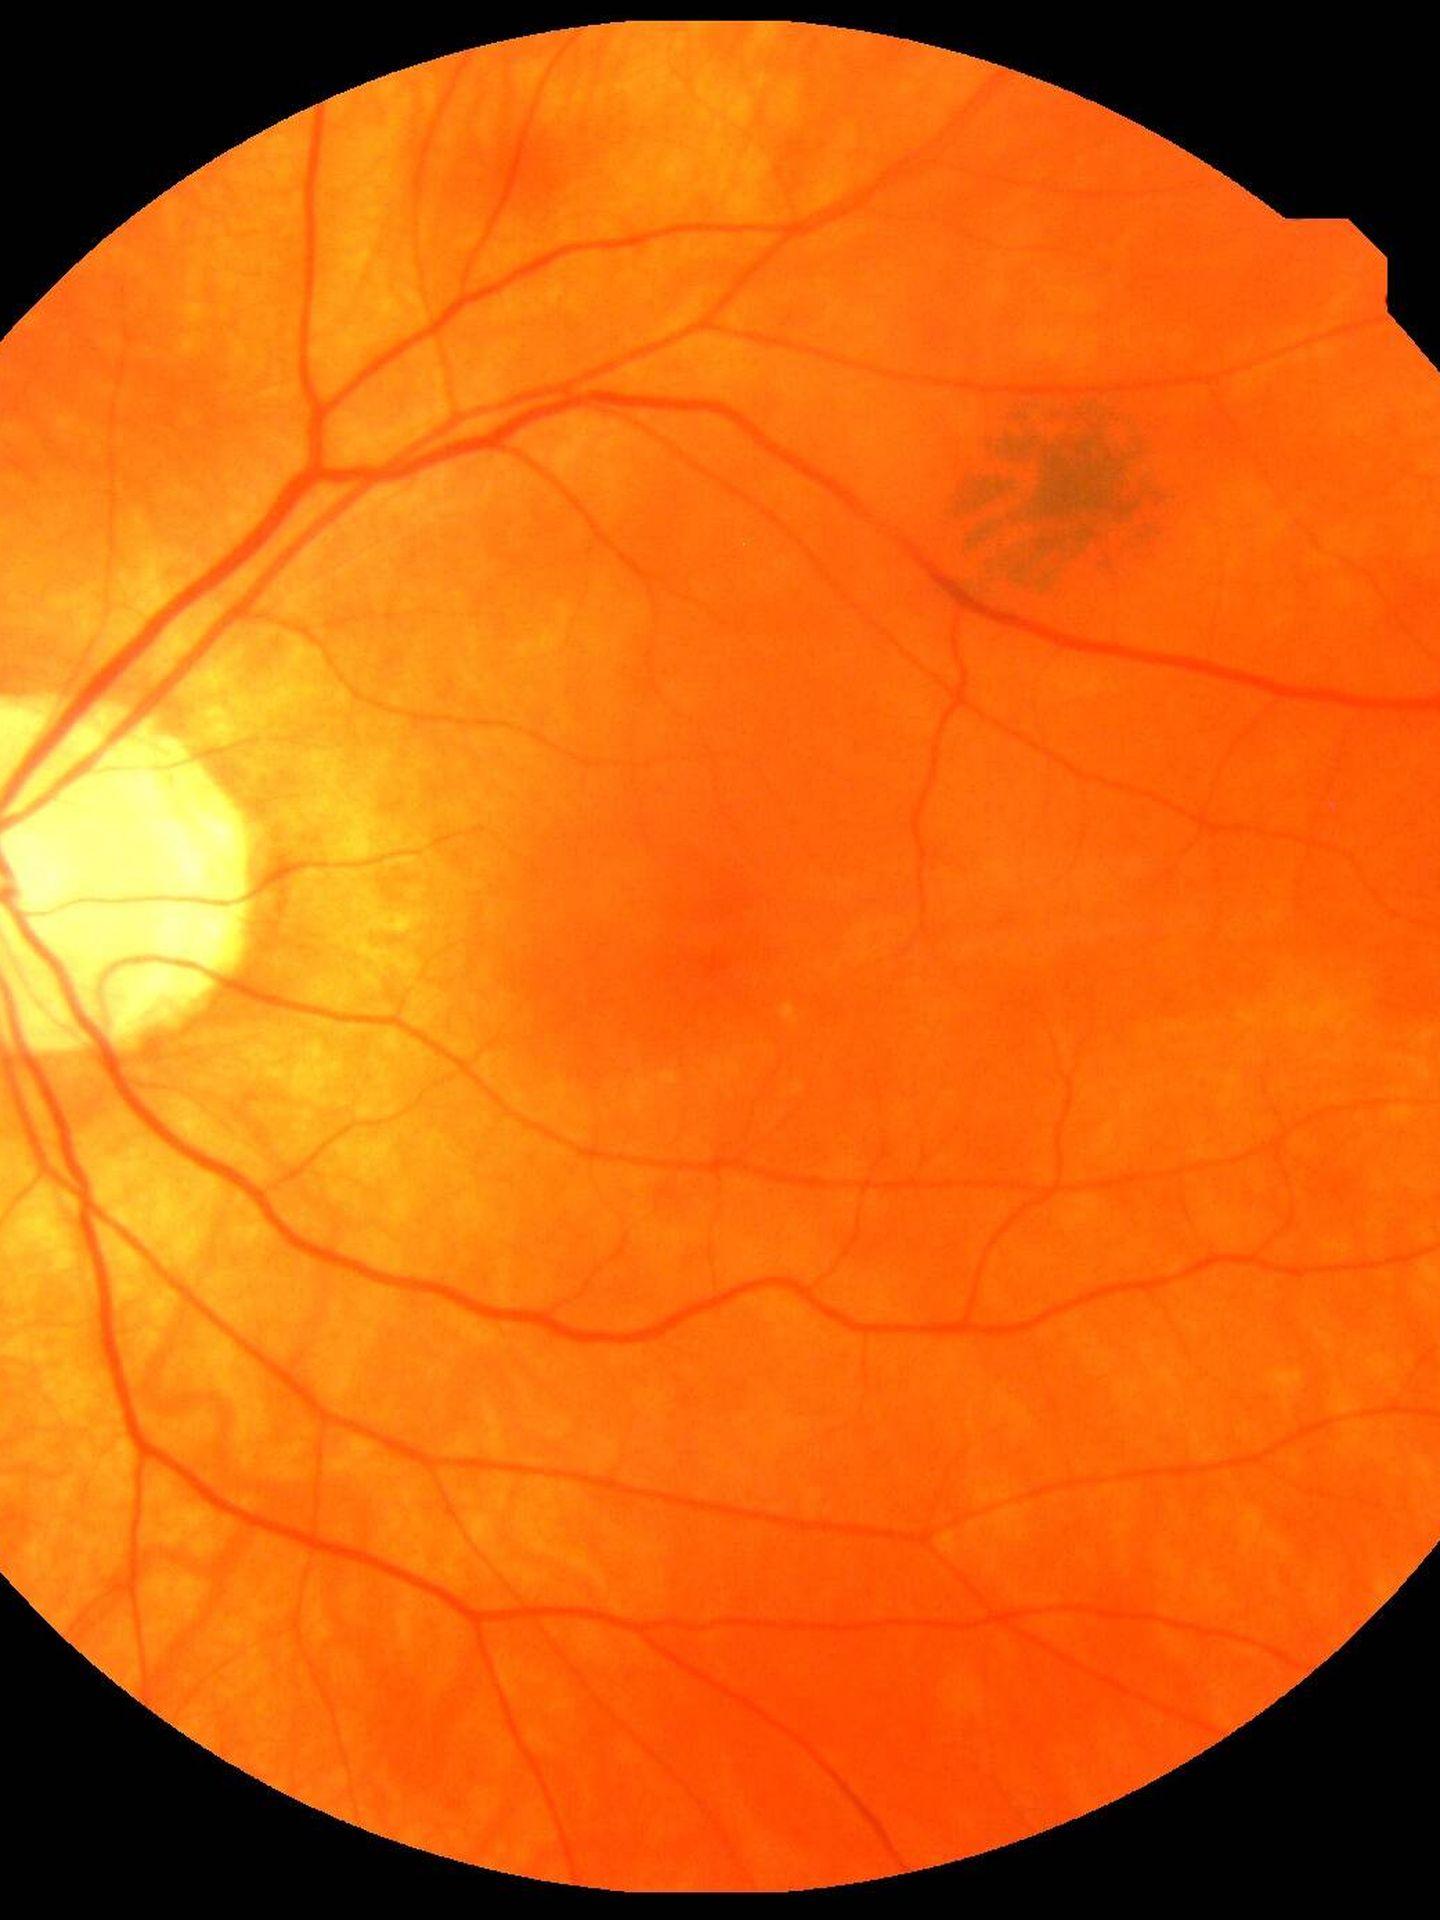 Escáner de retina. (Biobanco de Reino Unido)